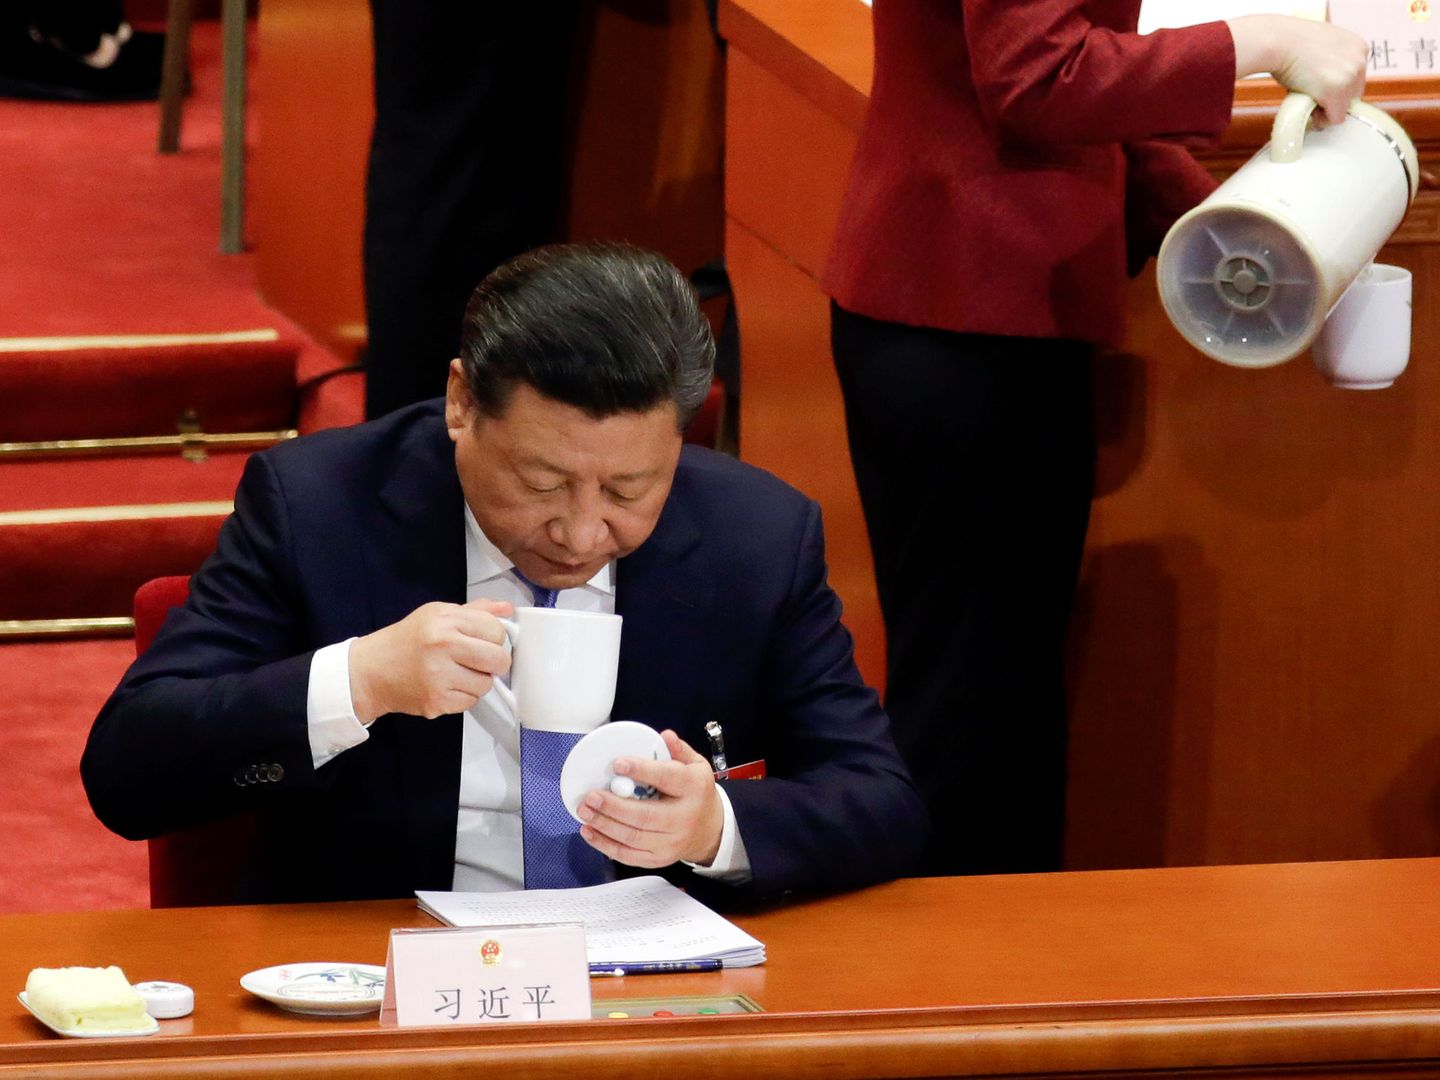 El presidente de China, Xi Jinping, tomando té en un acto en China. (Reuters)